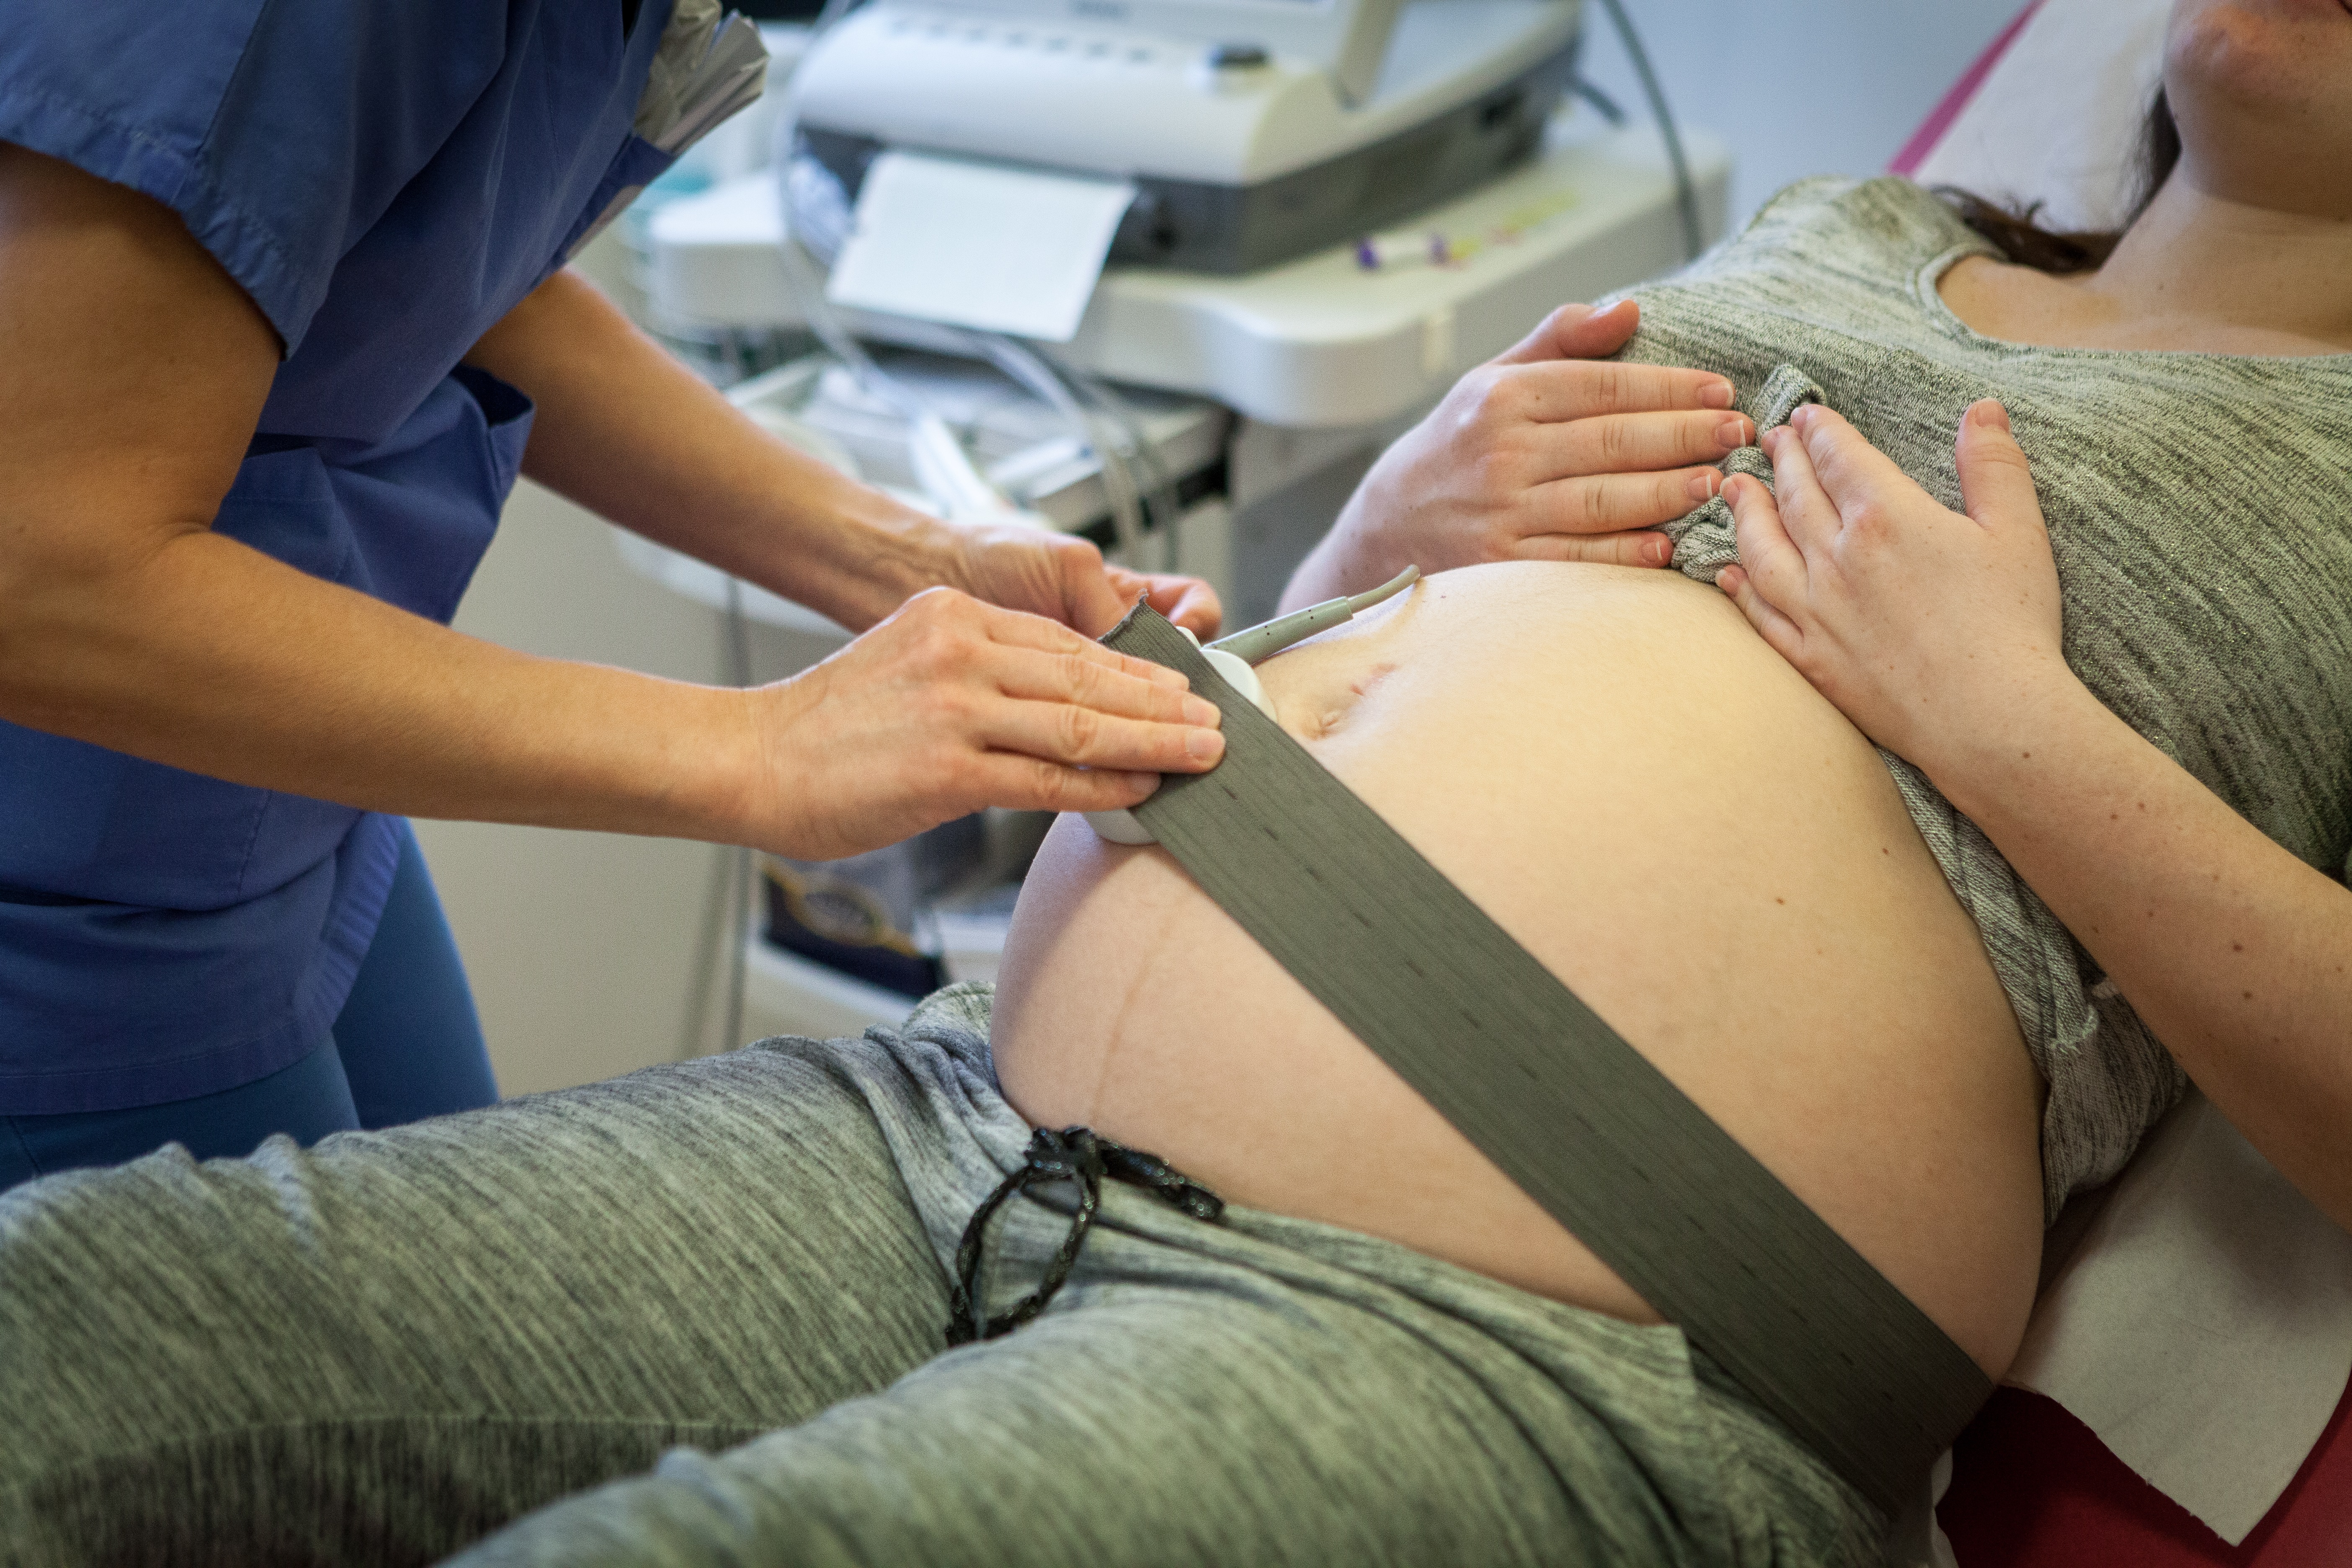 Szerződéssel tenné transzparensebbé az orvosfogadást az orvosi kamara, amíg teljesen felszívódik a választott orvosos szülés igénye